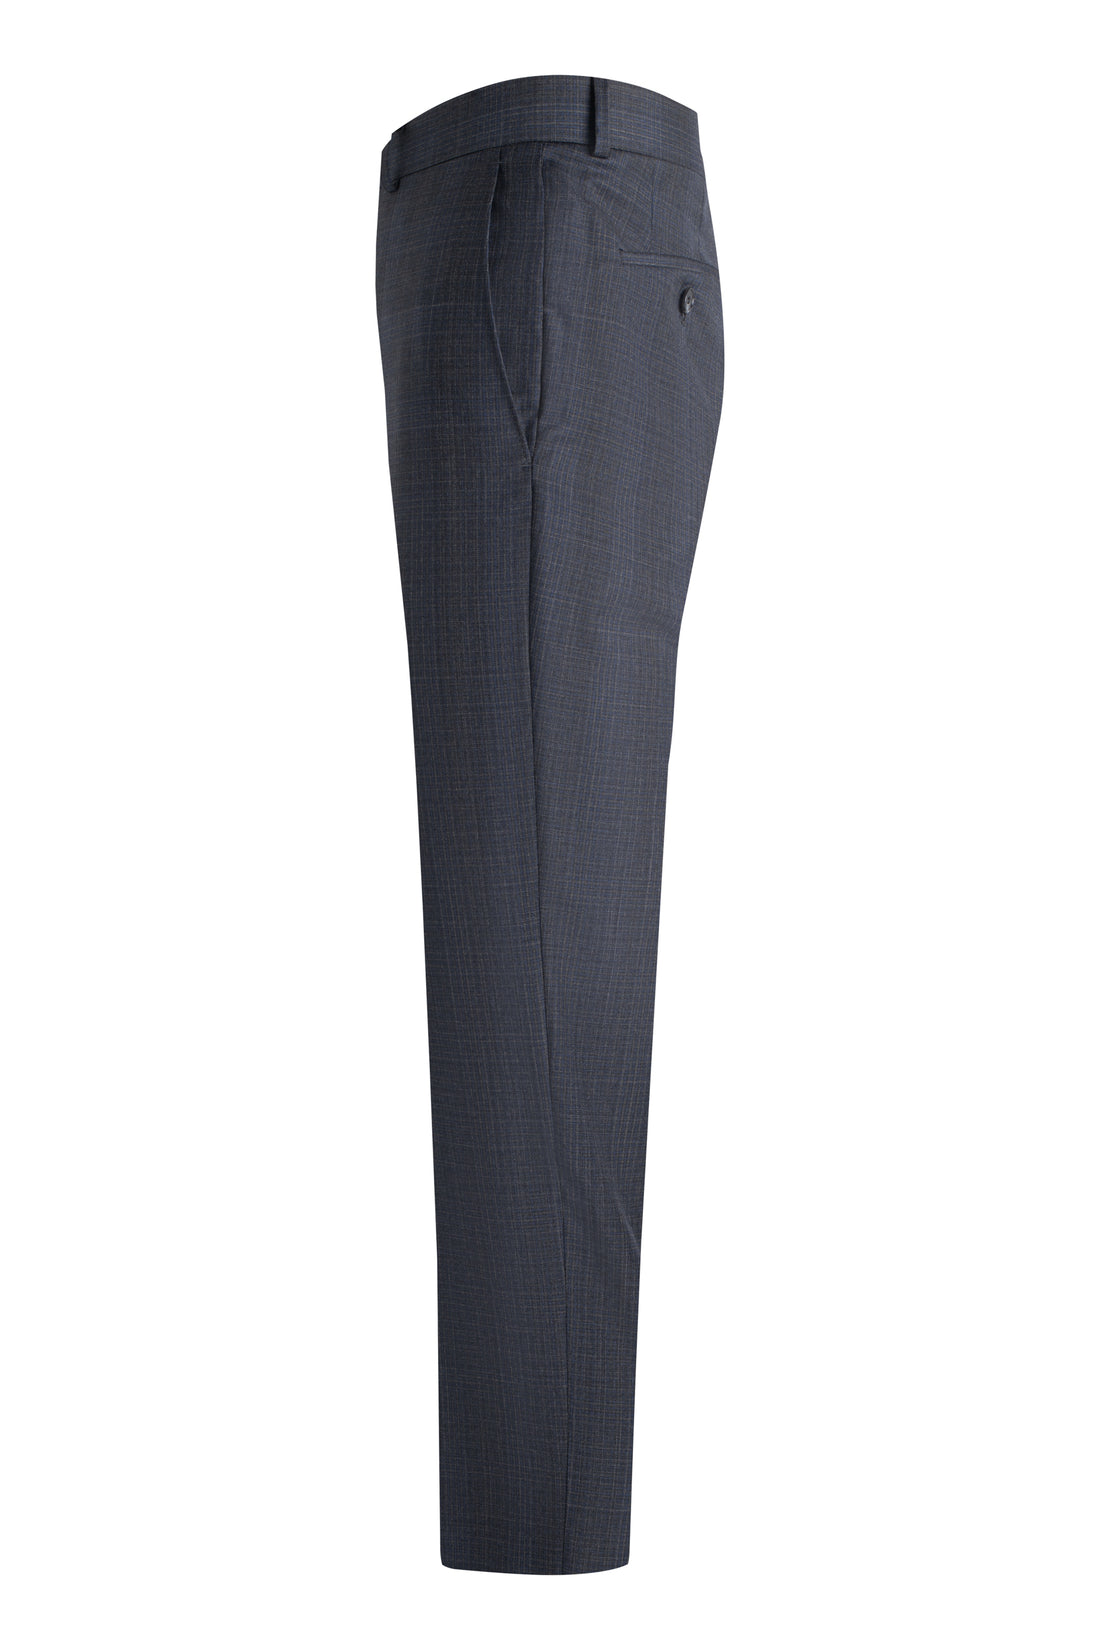 Charcoal-Blue Graph Check Suit side pant